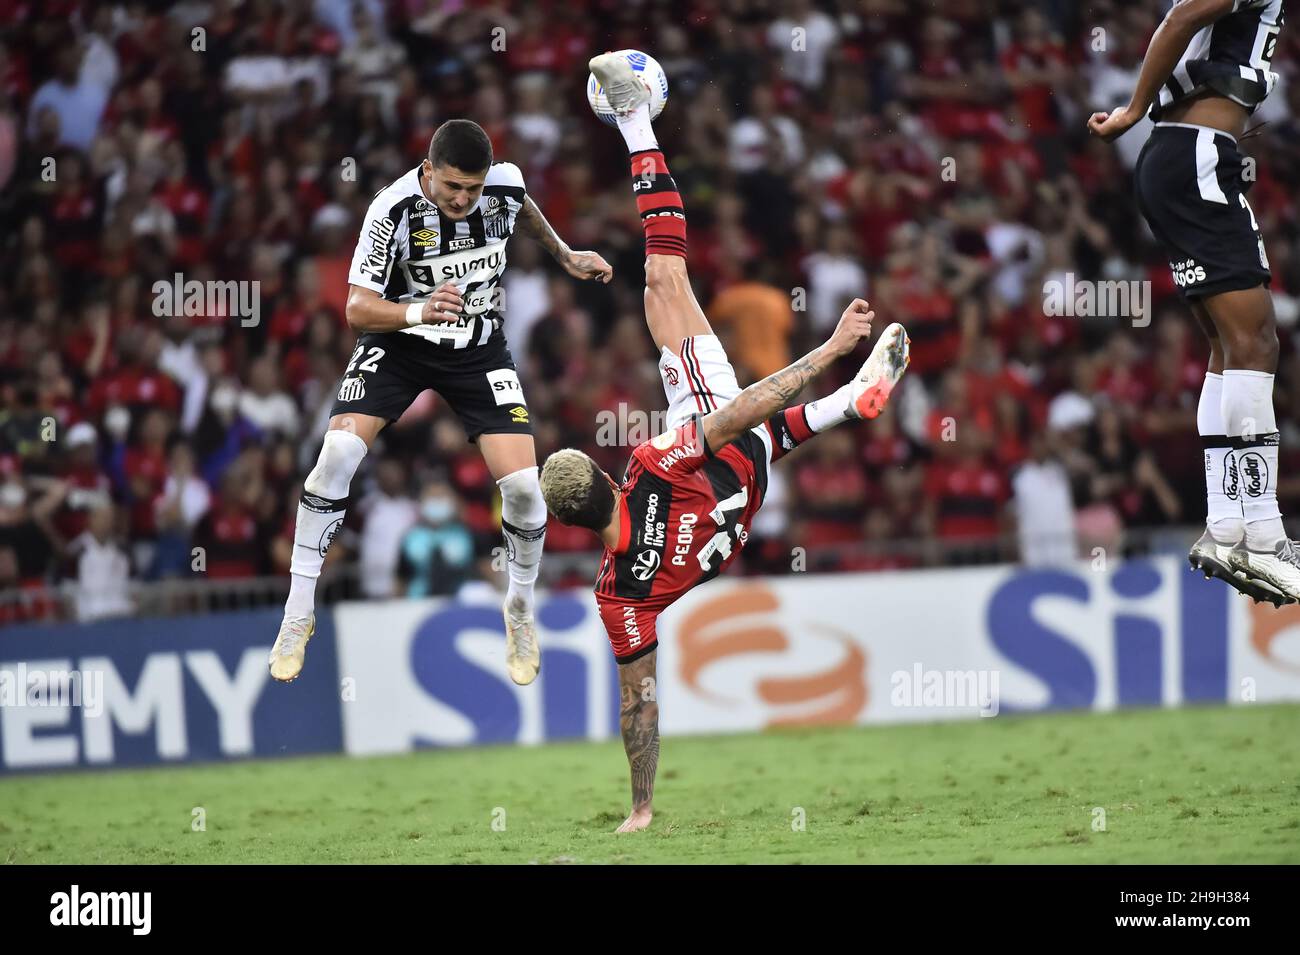 Pedro-Spieler Flamengo beim Fußballspiel Campeonato Brasileiro (Brasilianische Nationalliga) zwischen Flamengo Stockfoto